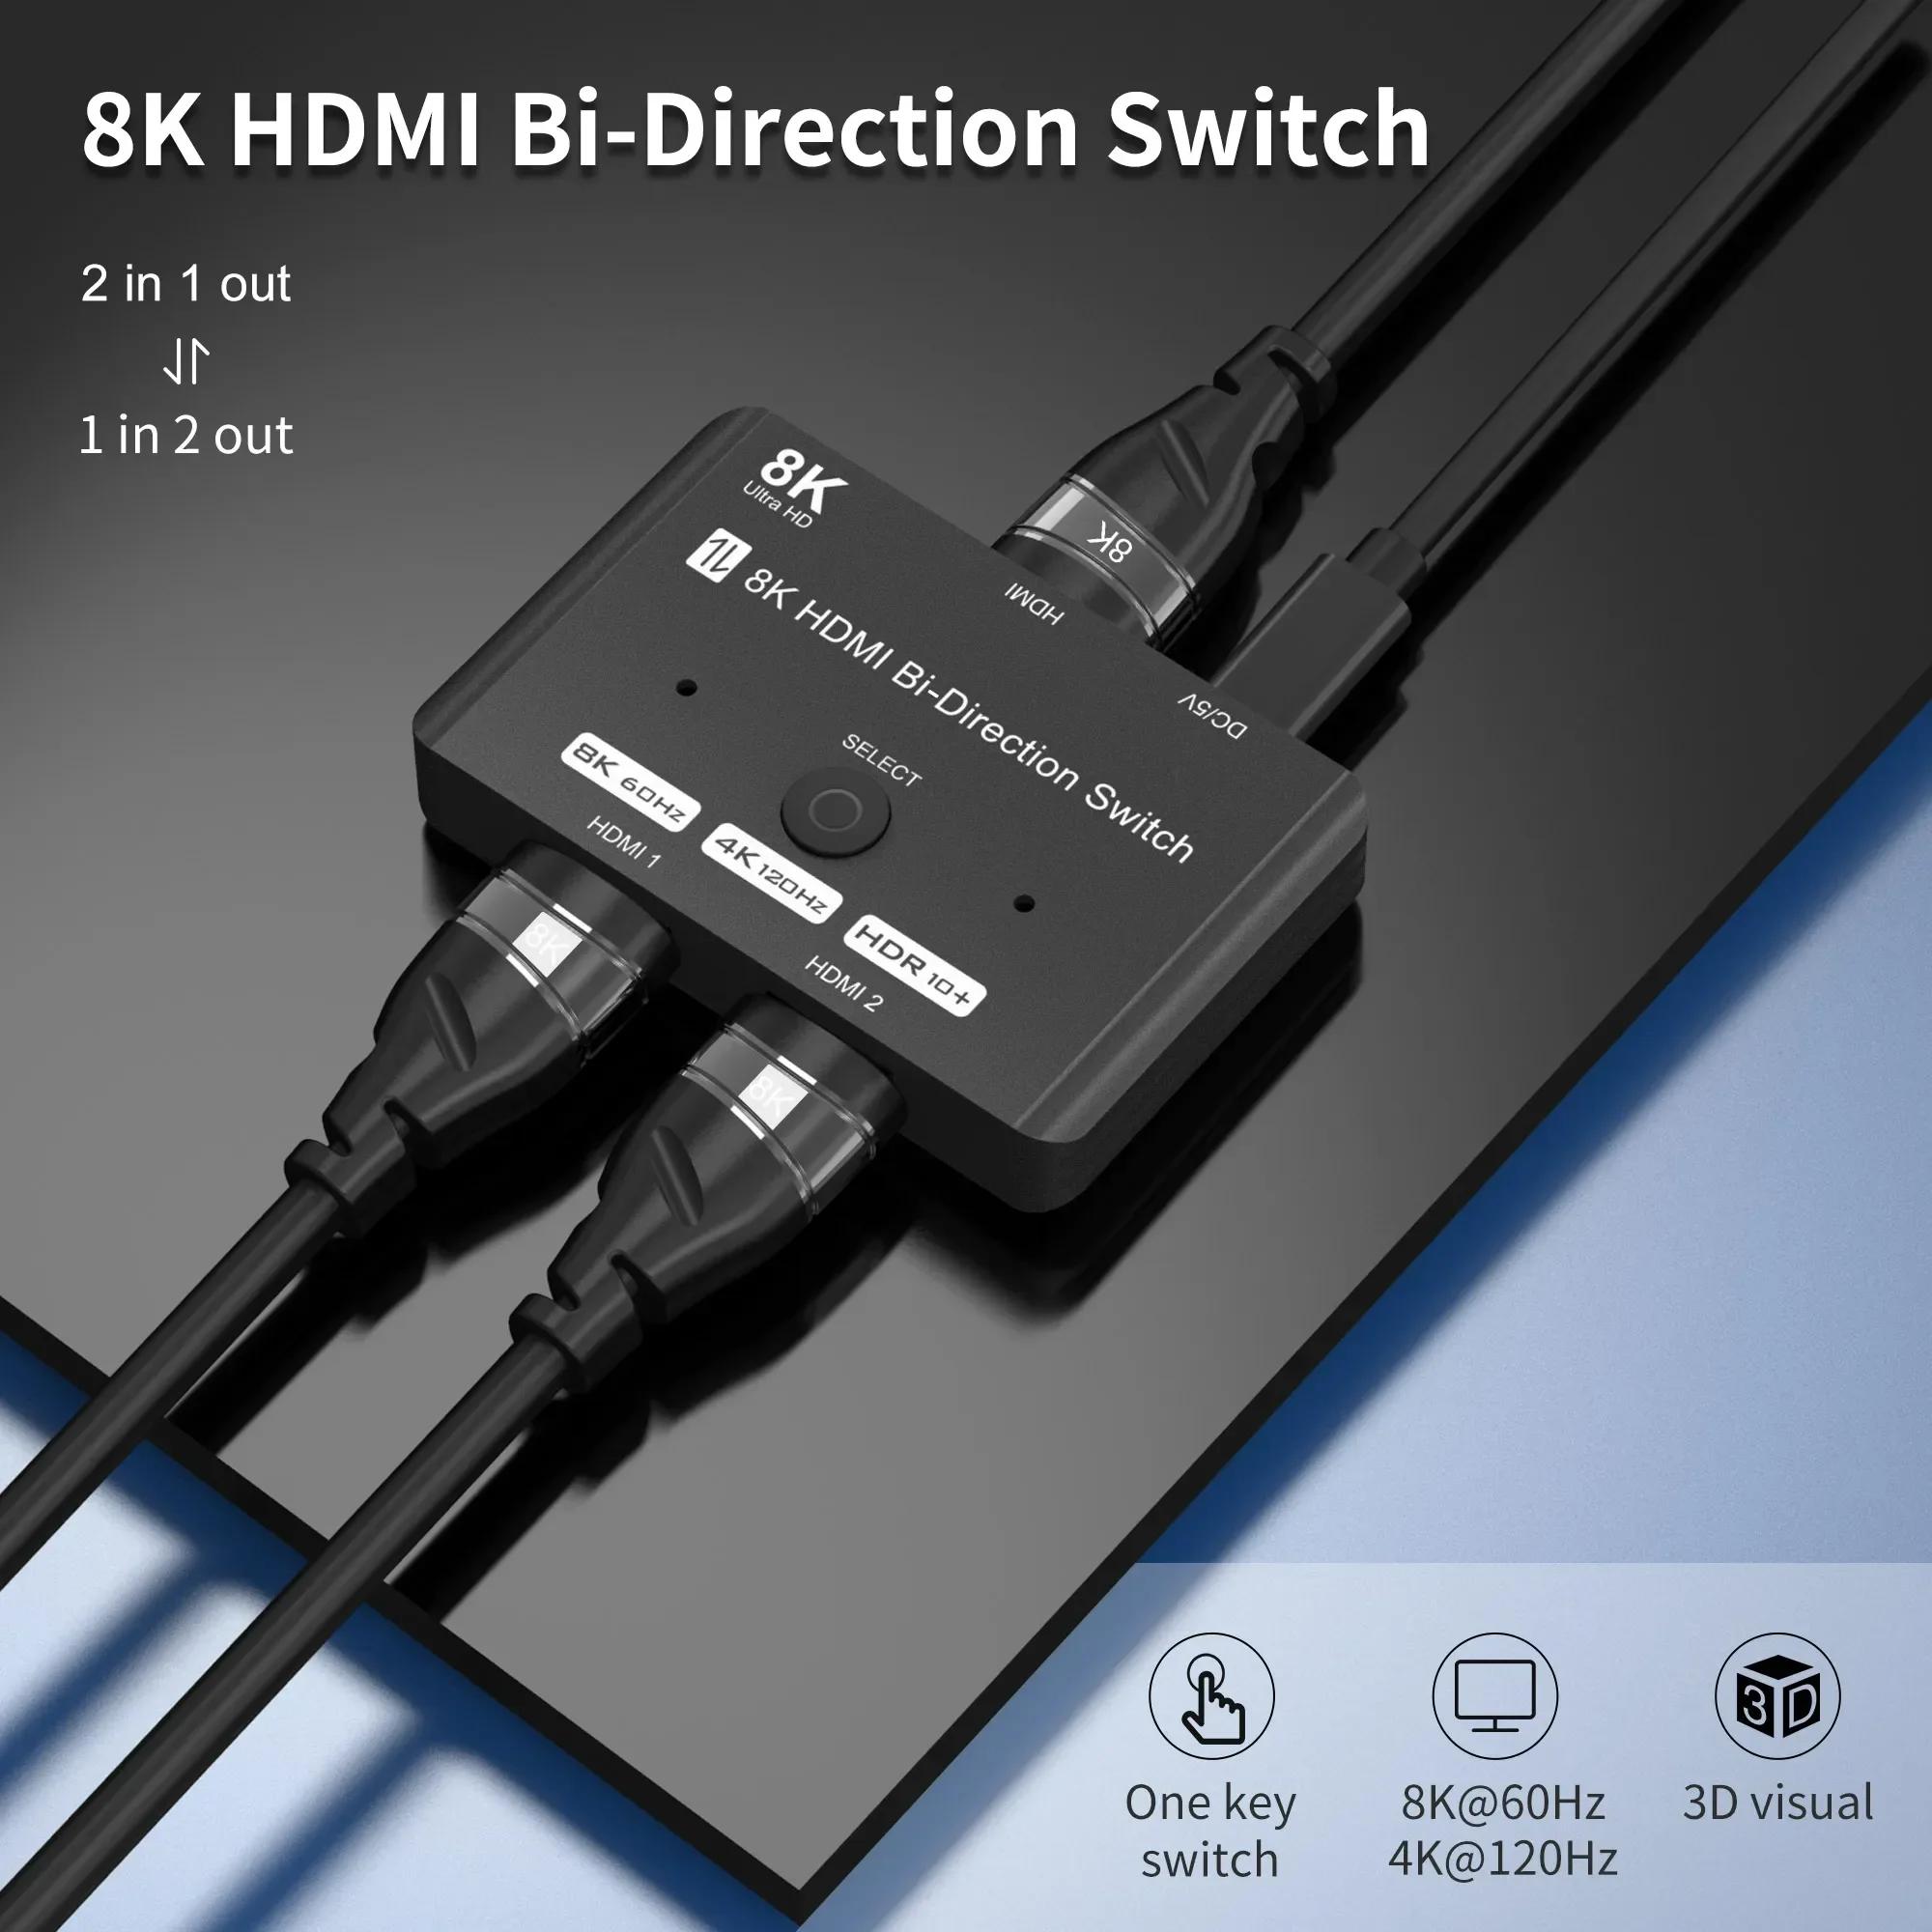 HDMI 2.1  ø ġ, HDMI ó, PS5 Xbox ø HDTV Ϳ, 2 in 1/1 in 2 out, 8K @ 60Hz, 4K @ 120Hz